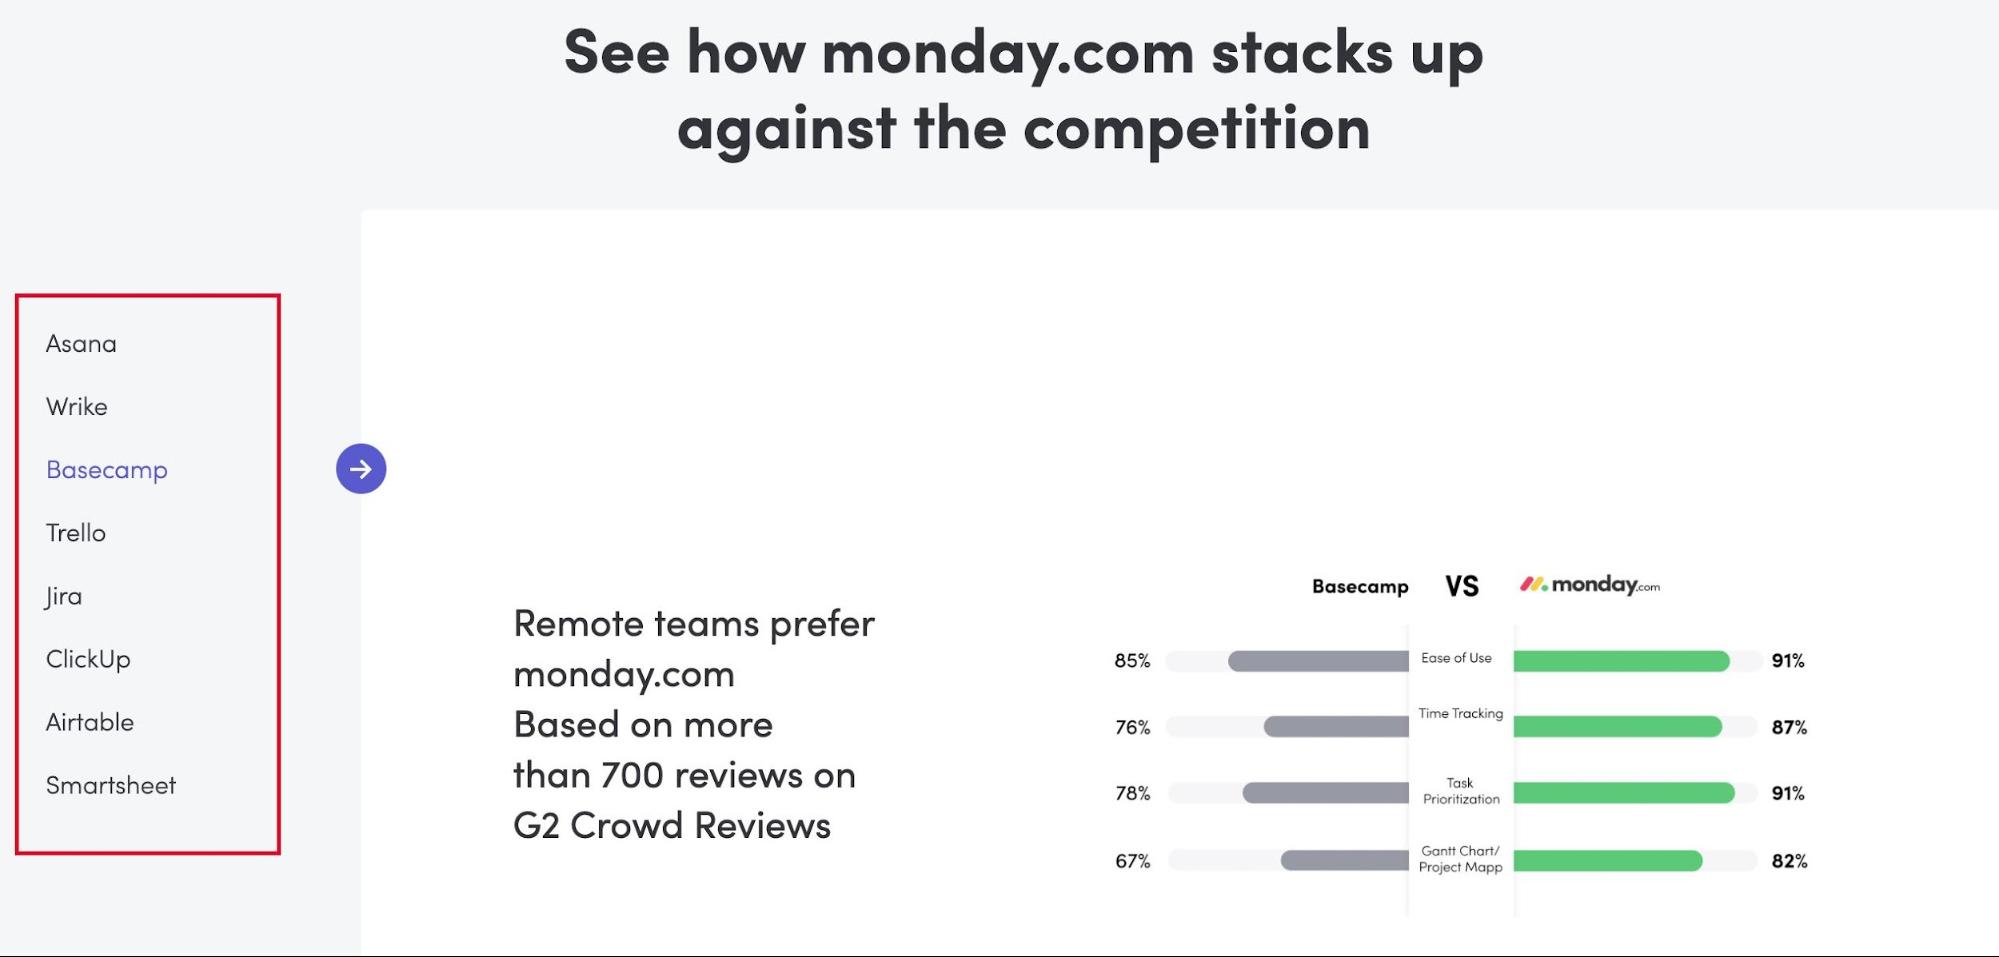 Monday предлагает таблицу сравнения с конкурентами, чтобы вписать их названия на странице